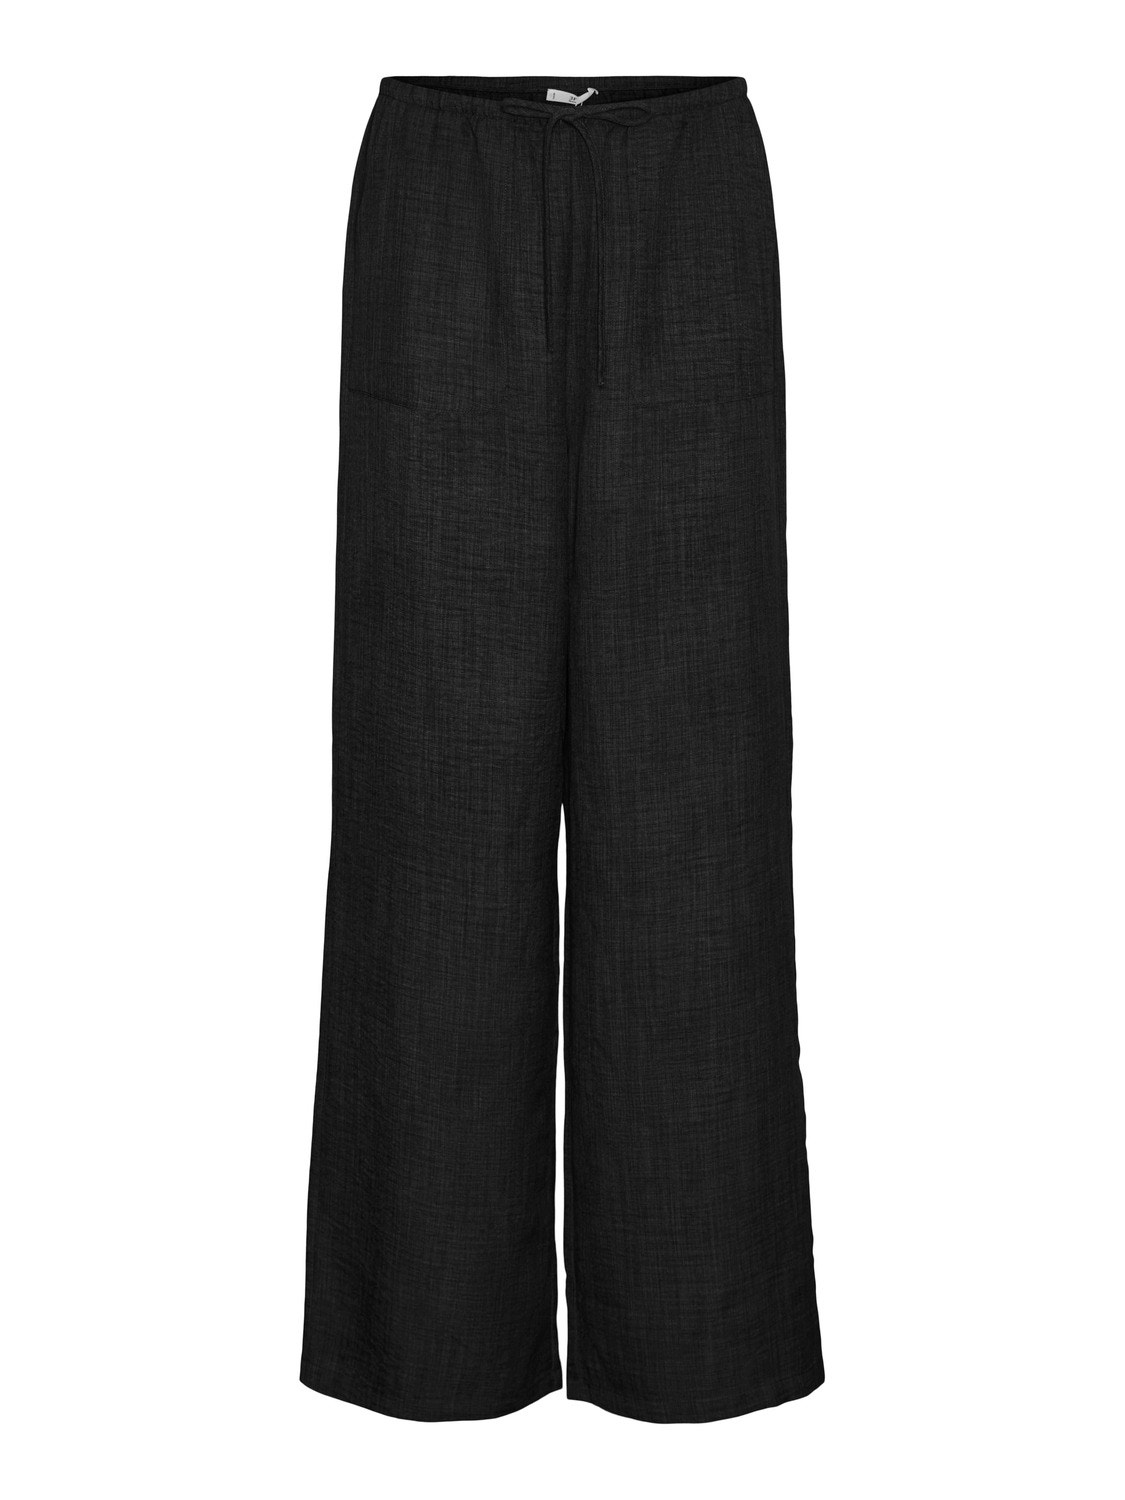 Vero Moda VMMELANEY Spodnie -Black - 10316385